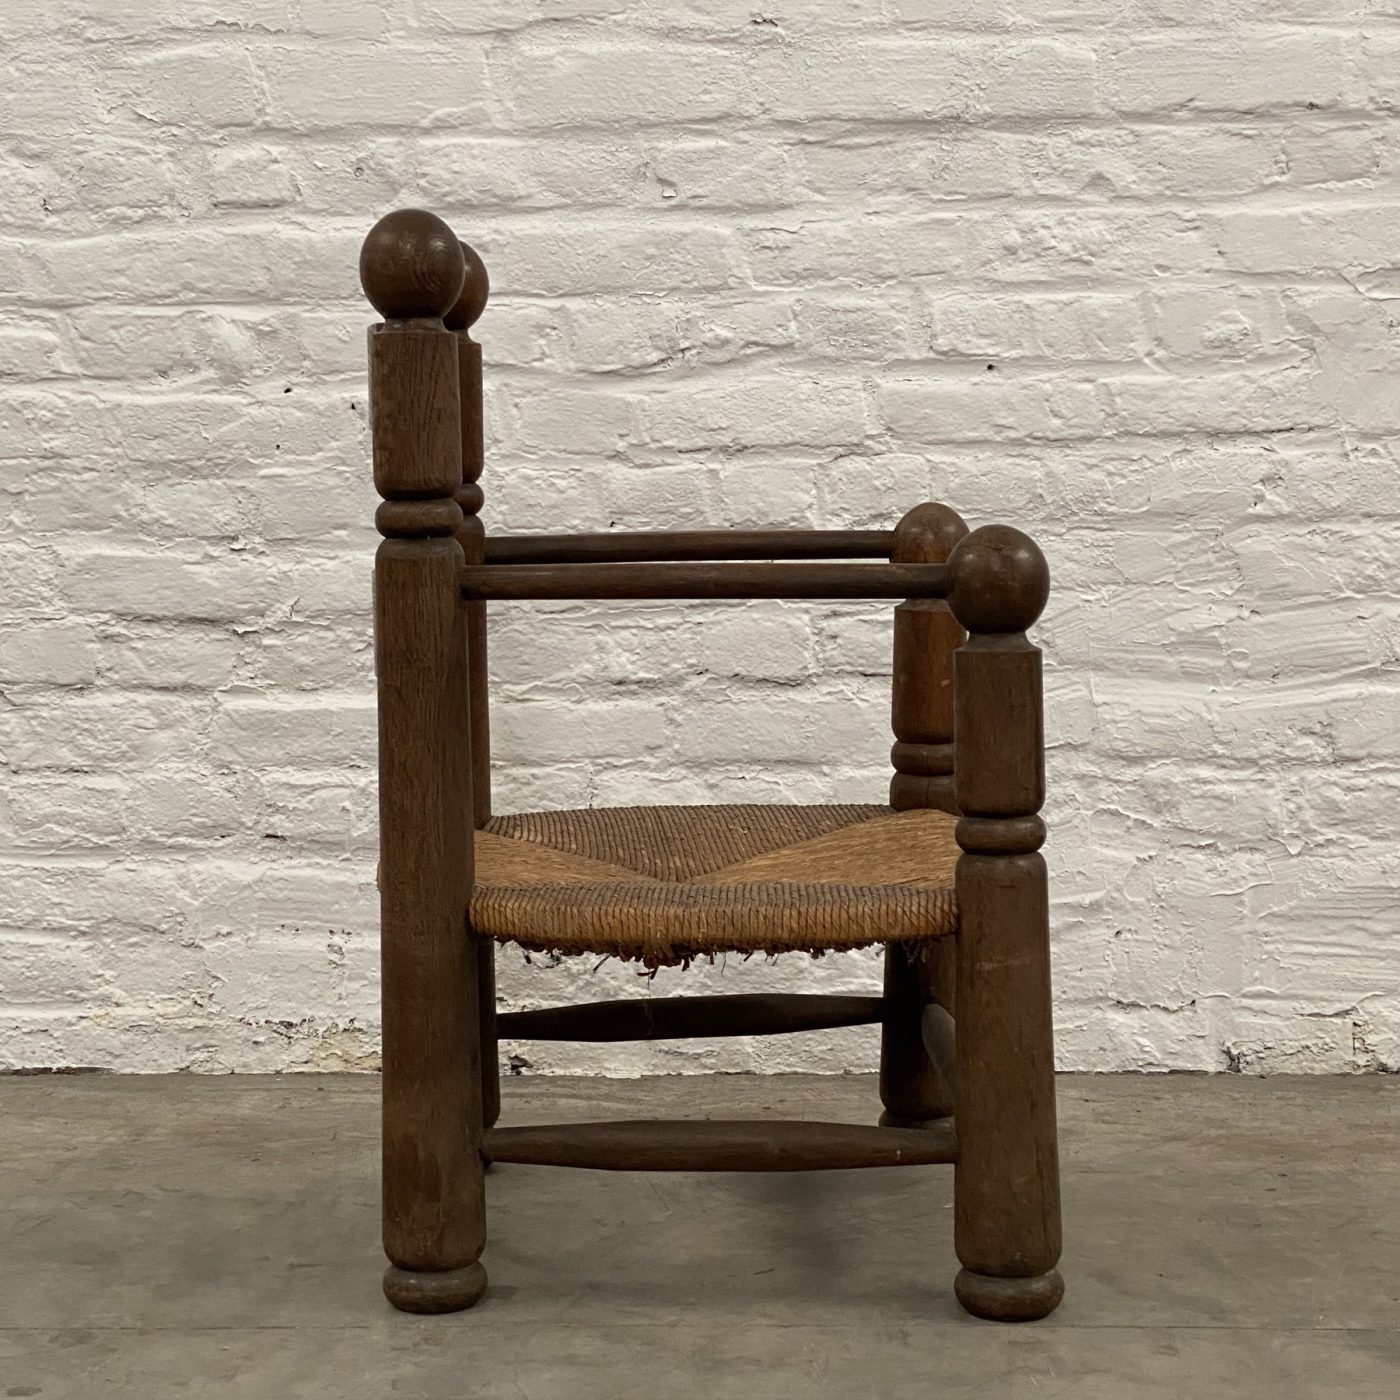 objet-vagabond-dudouyt-chairs0011